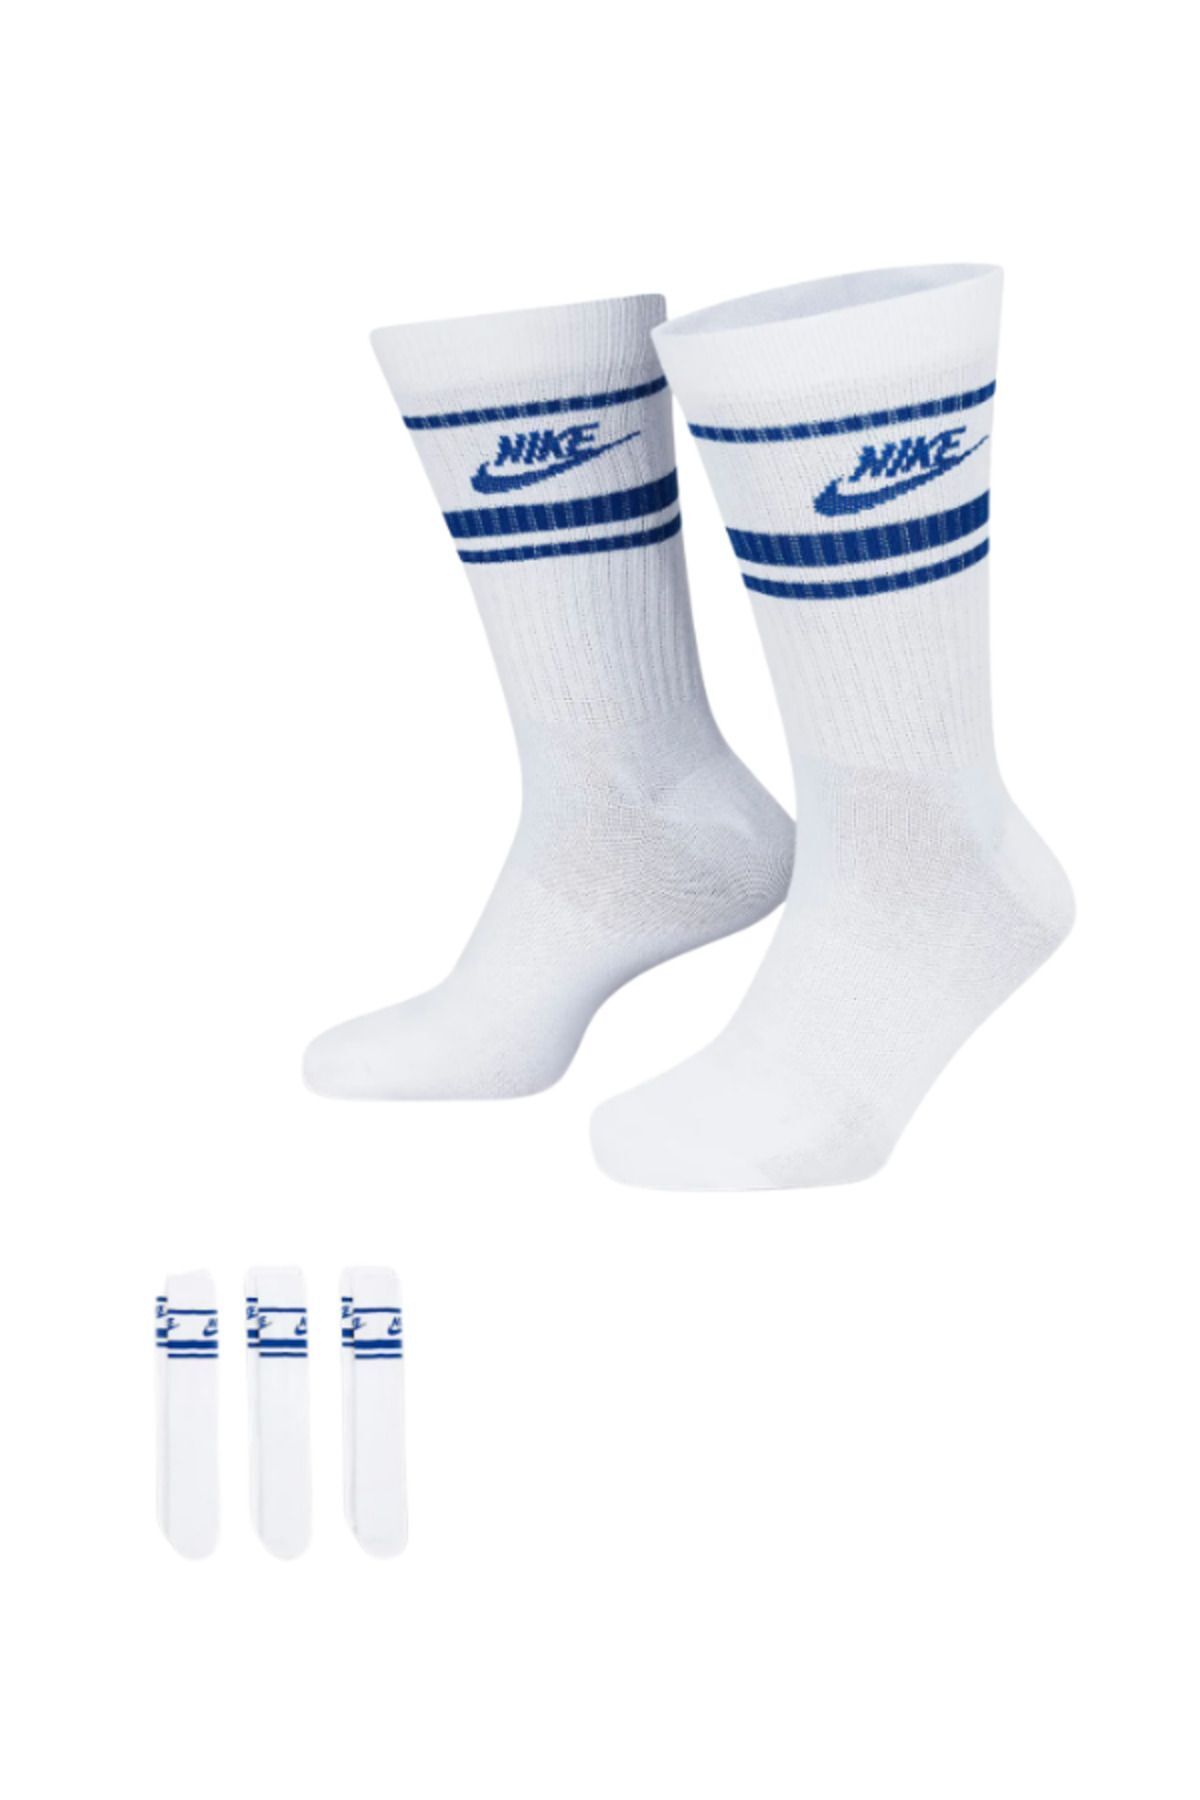 Bonapart 3 Çift Özel Seri Essential Stripe Unisex Mavi Antrenman Spor Çorap Seti